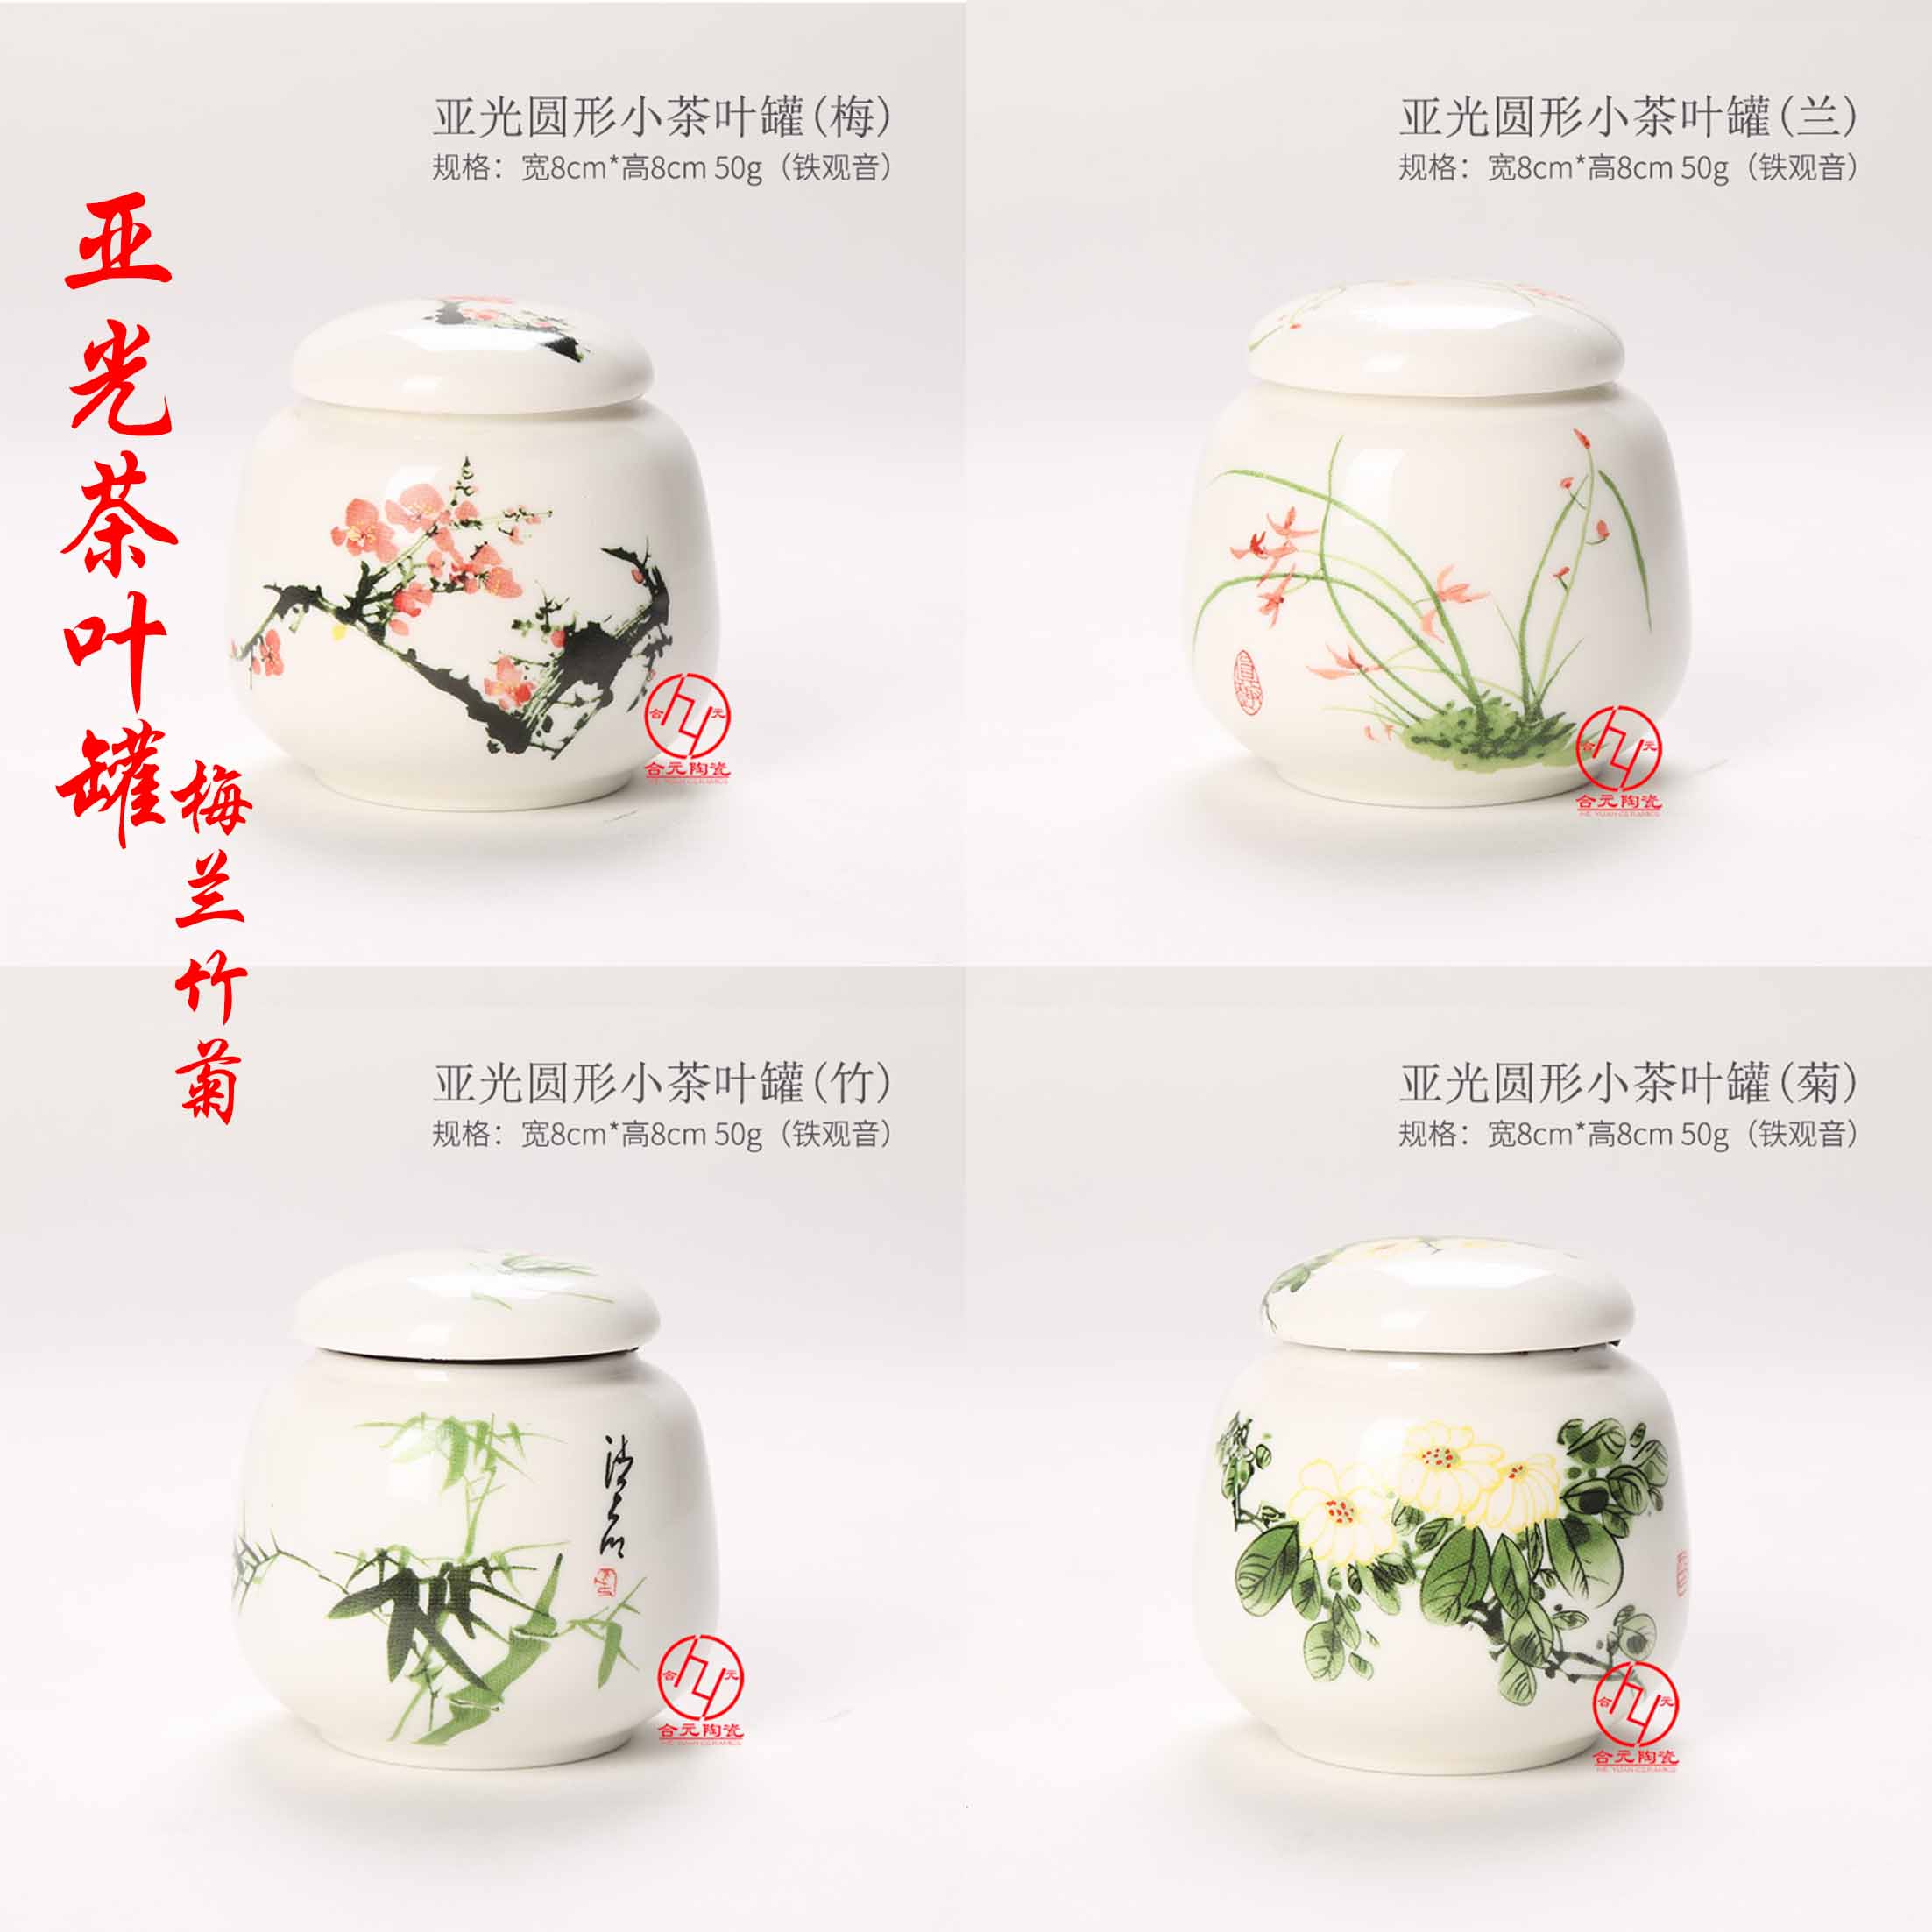 梅兰竹菊陶瓷茶叶罐供应批发